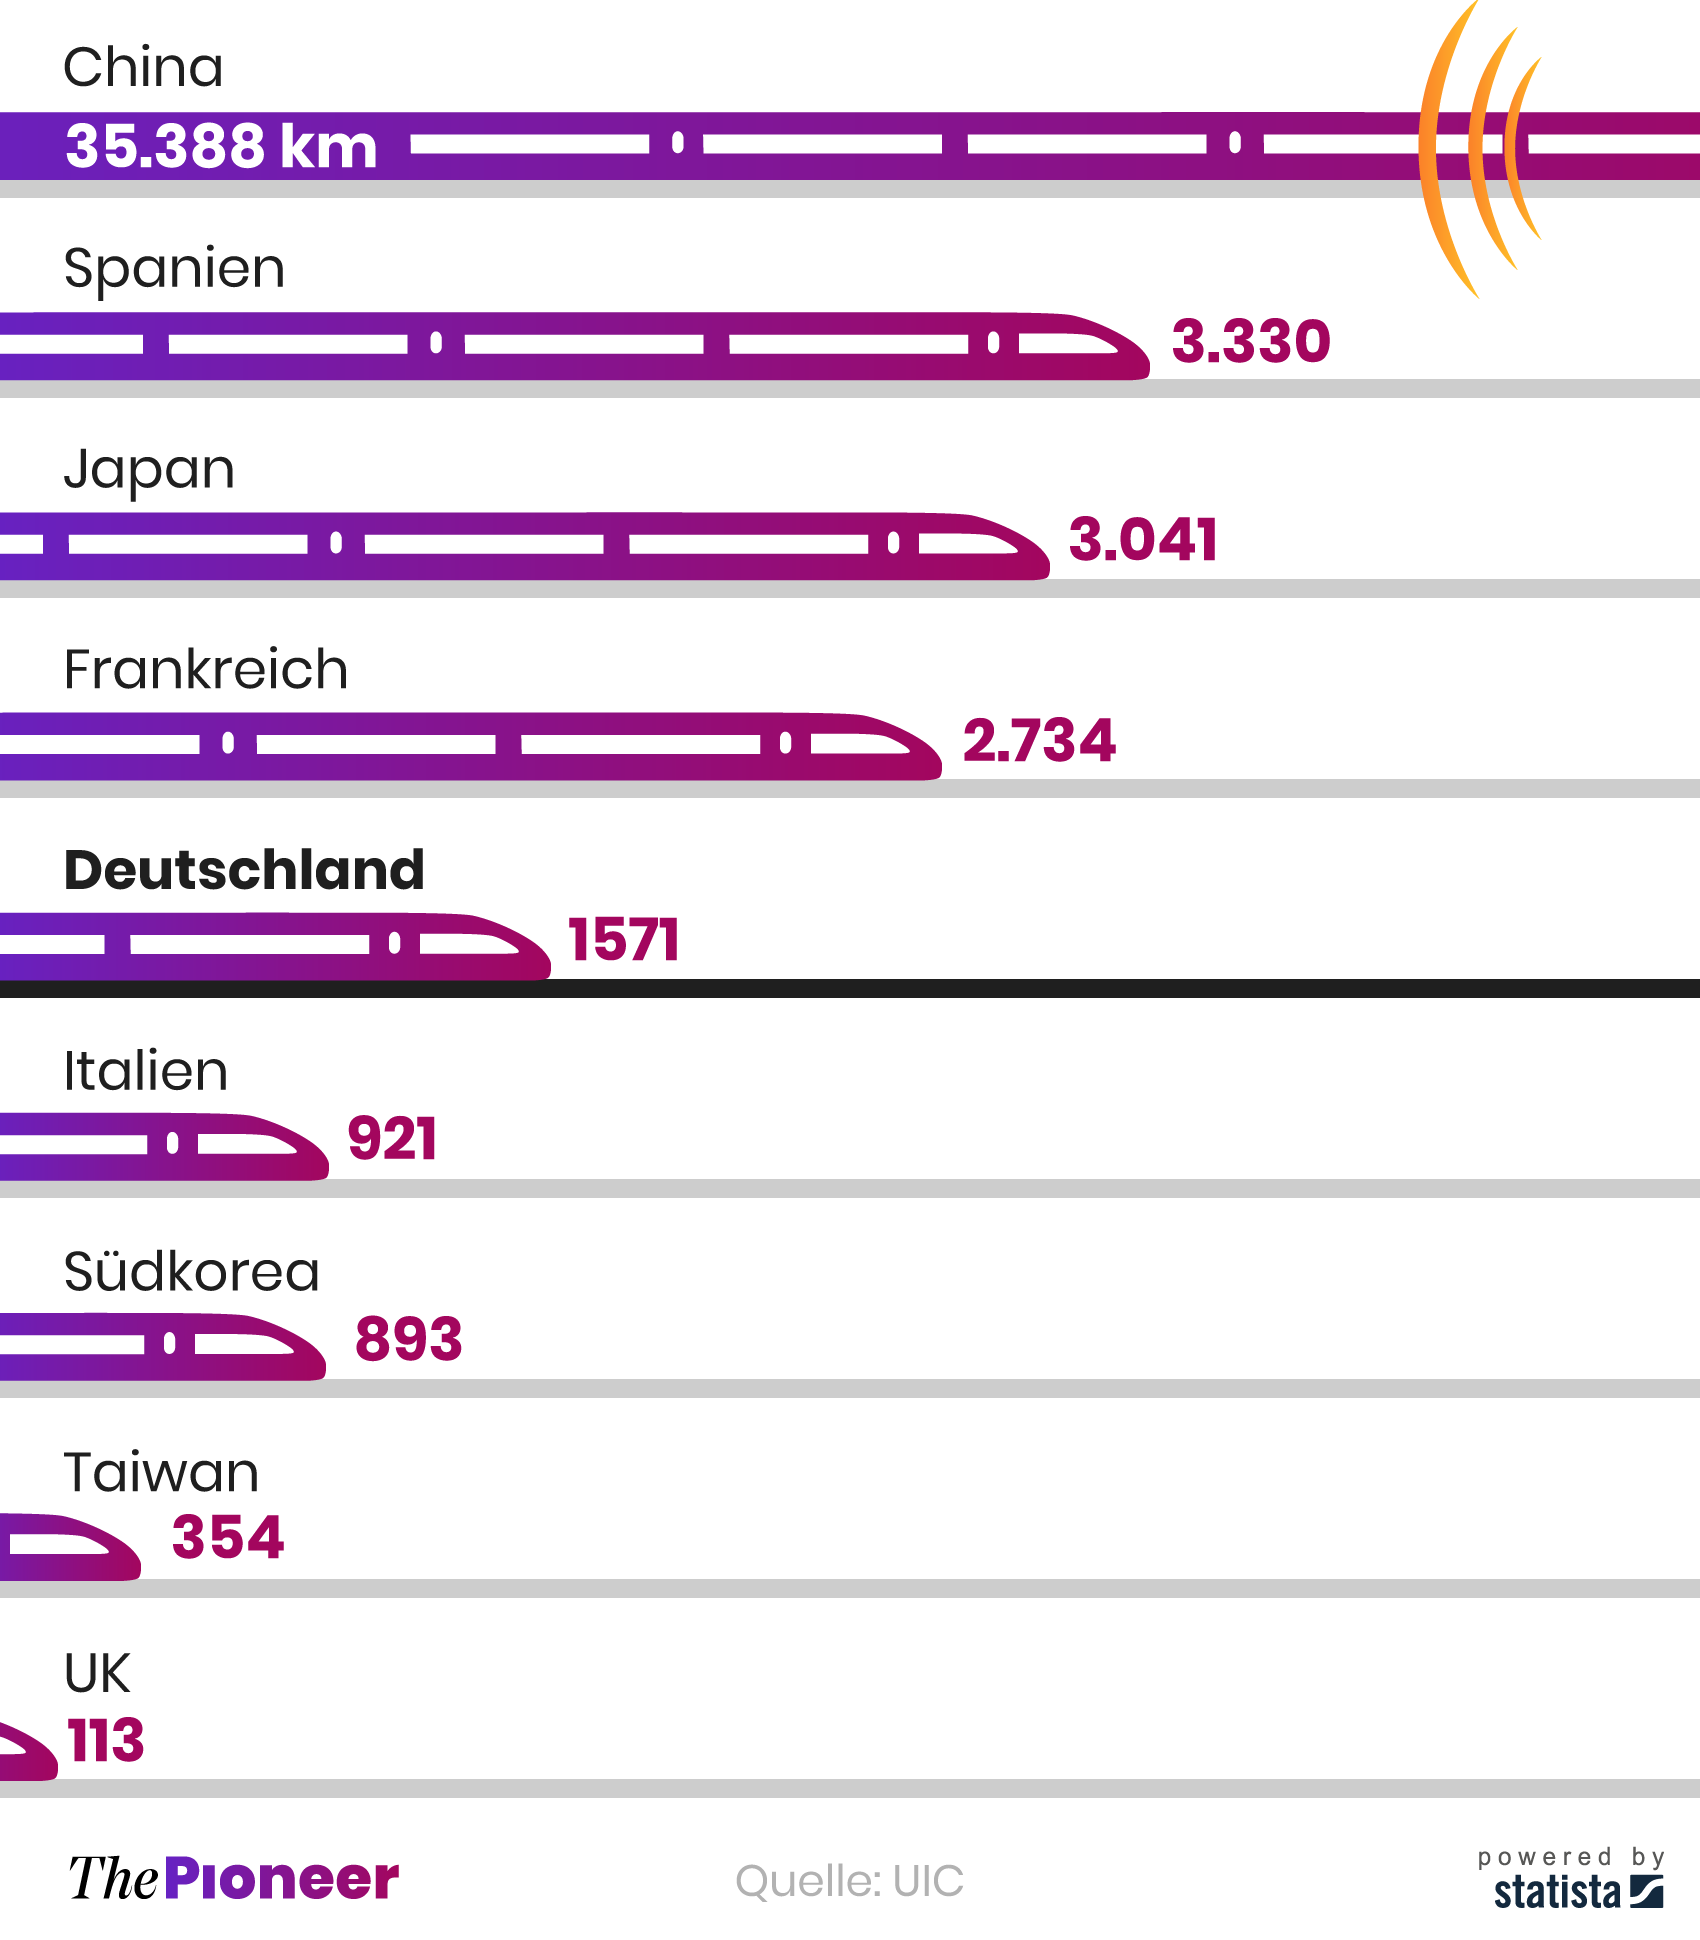 Hochgeschwindigkeitsnetze (über 200km/h) im internationalen Vergleich